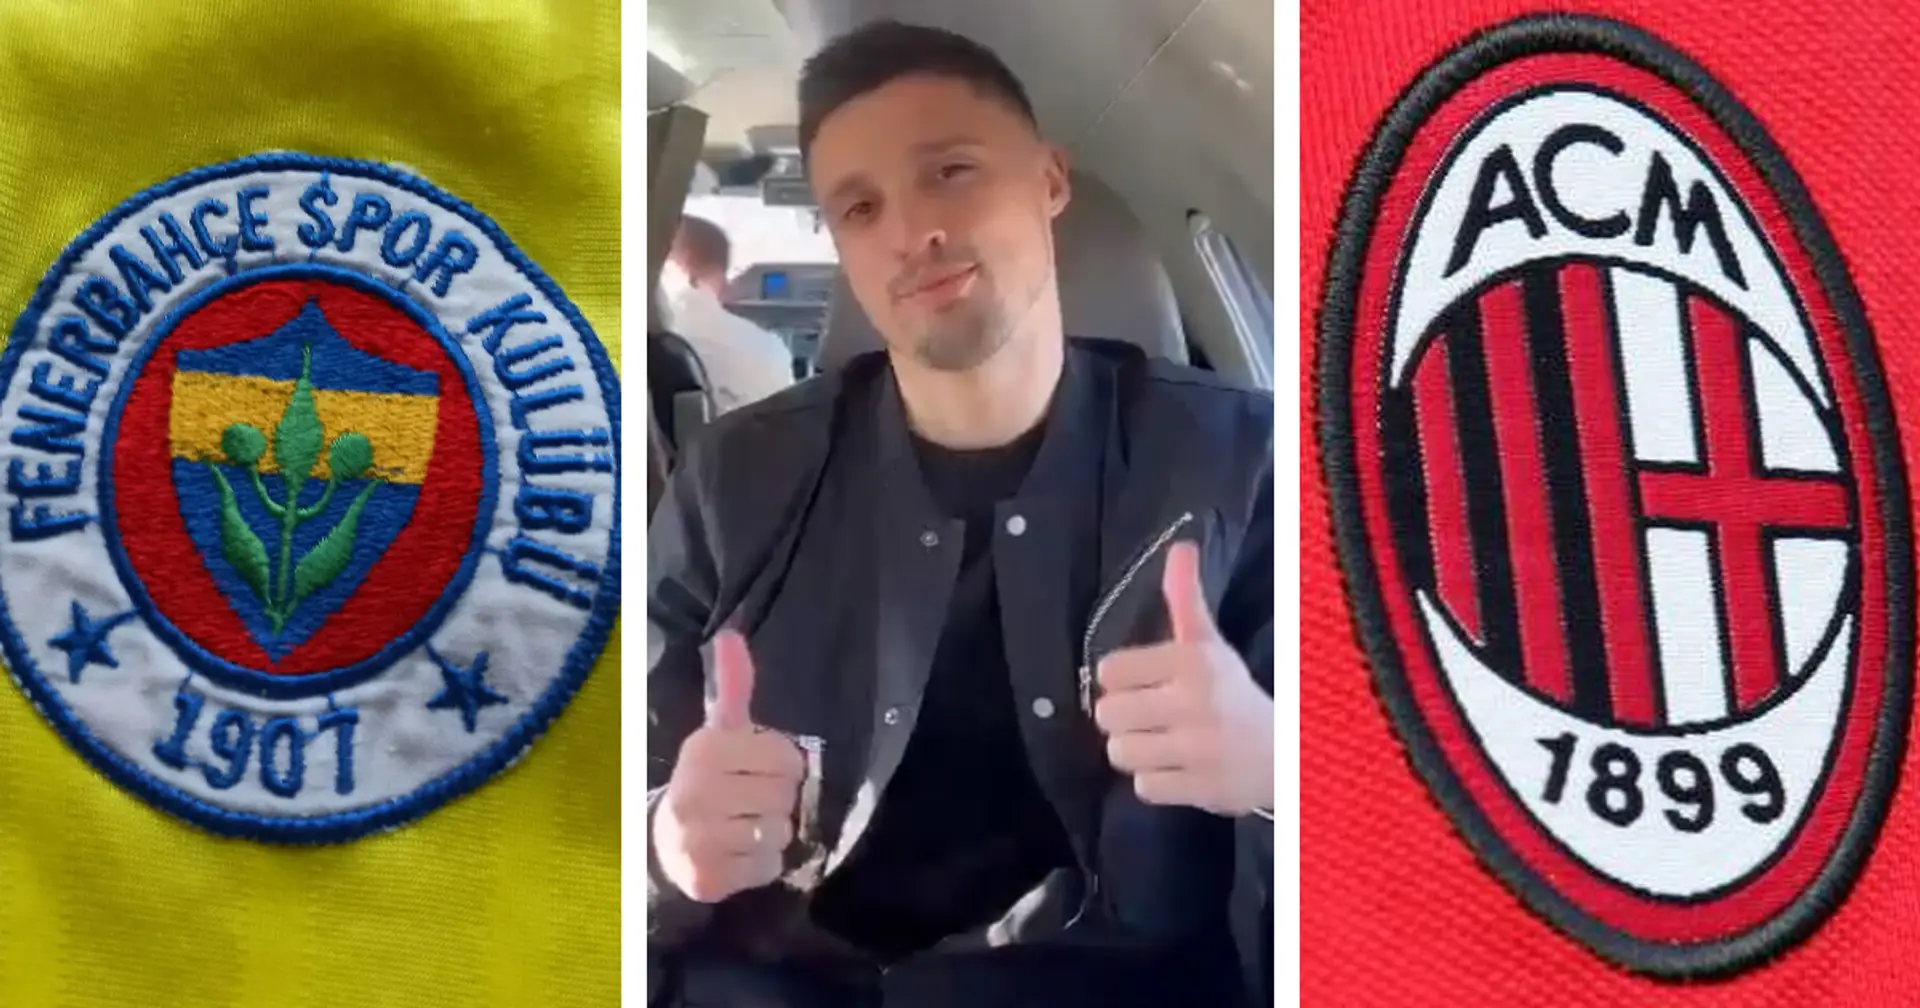 FLASH| Krunic saluta i nuovi tifosi, e snobba quelli del Milan: "Ciao Fenerbahce fans!"